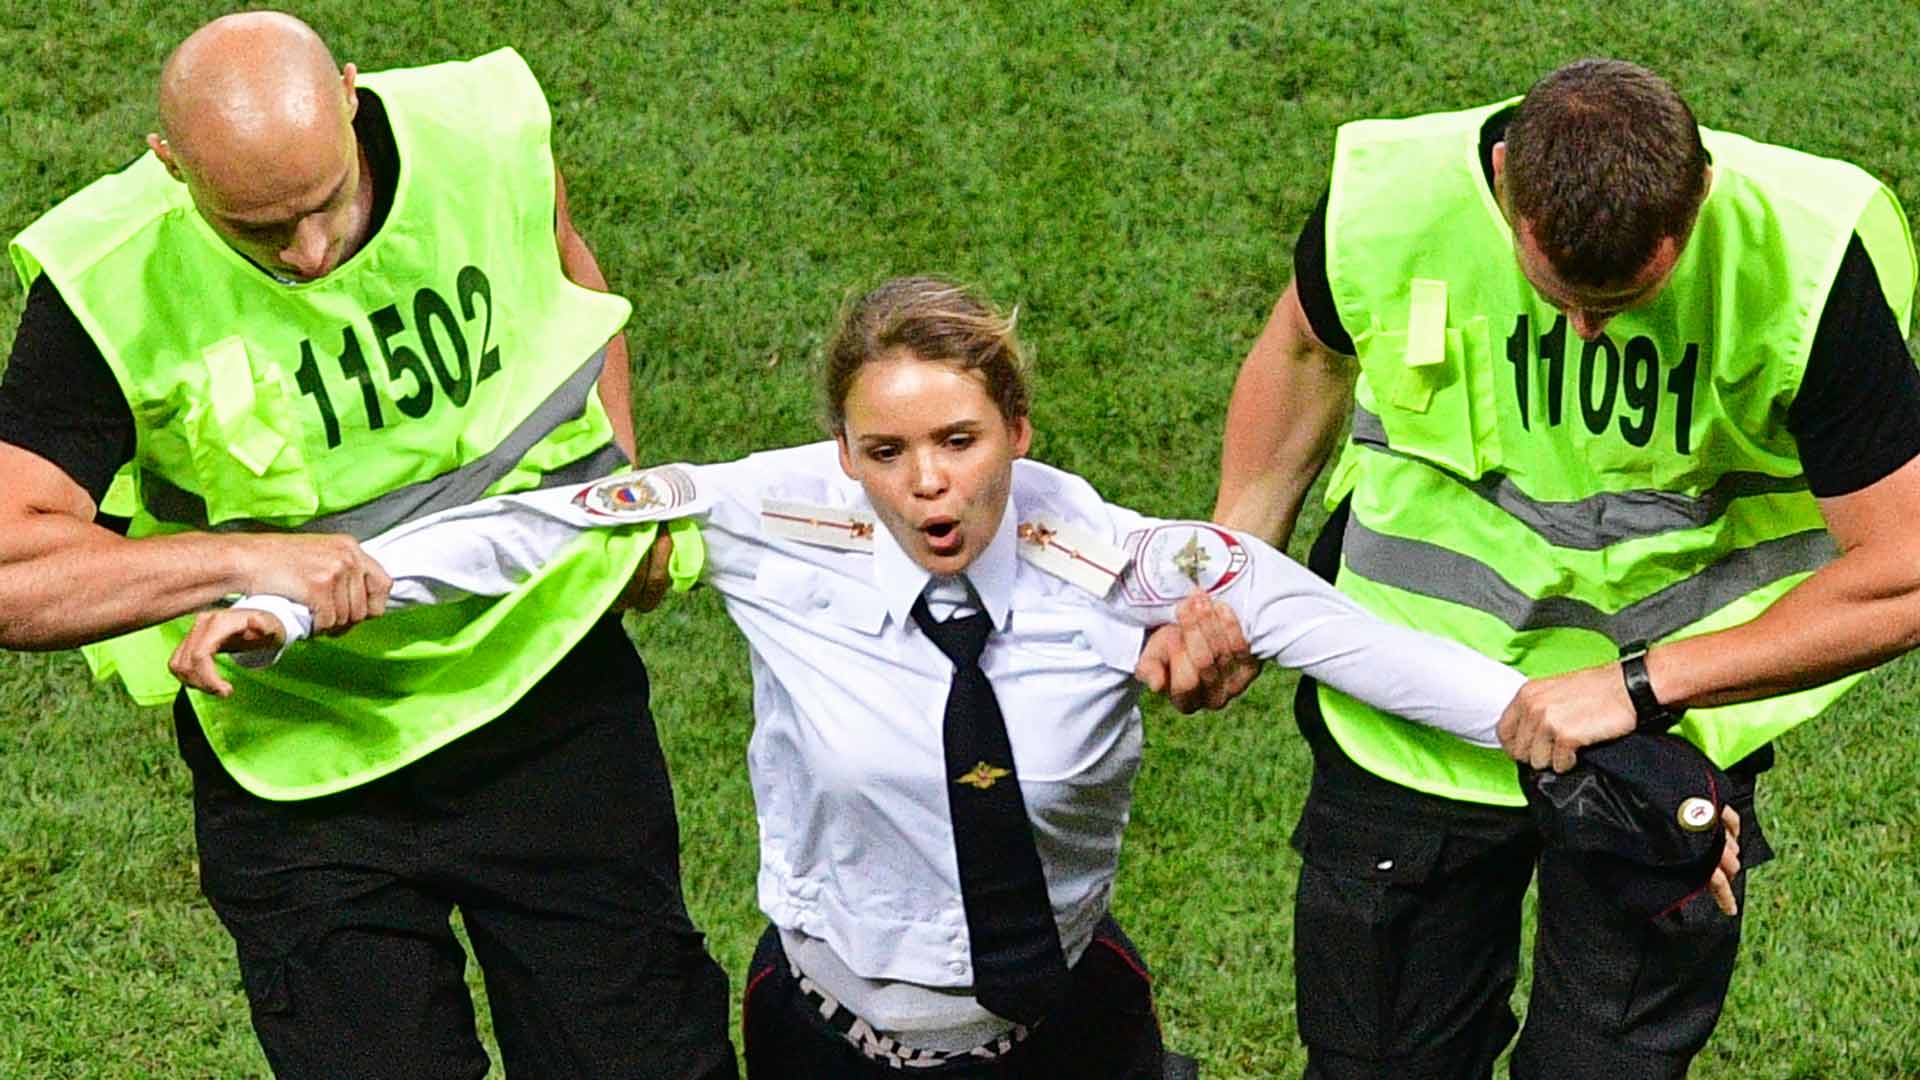 Condenan a 15 días de prisión a la miembro de Pussy Riot que saltó al estadio en la final del Mundial